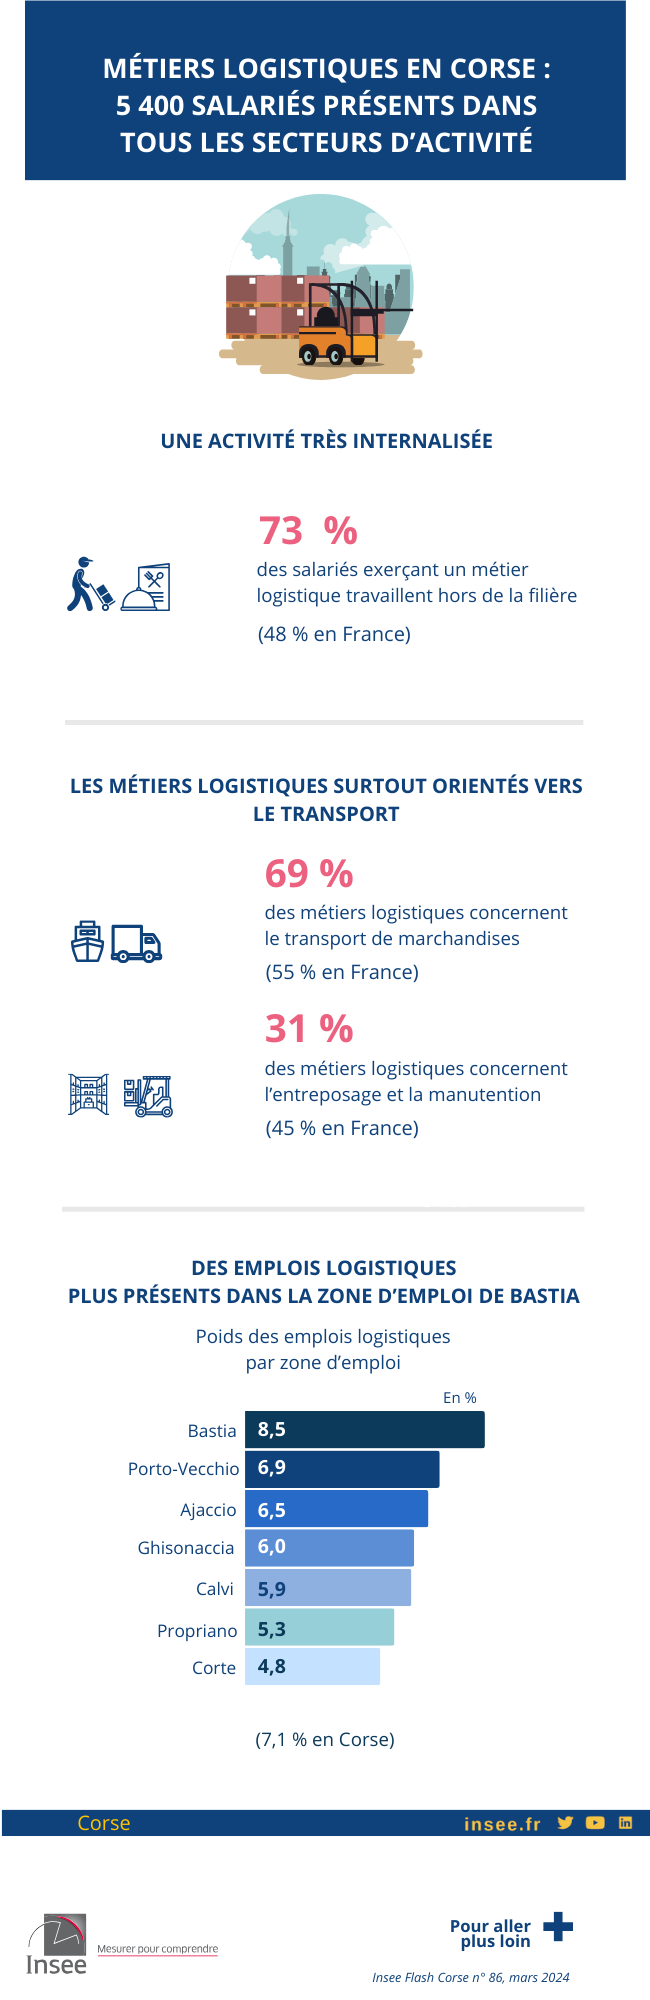 Métiers logistiques en Corse : 5 400 salariés présents dans tous les secteurs d’activité.